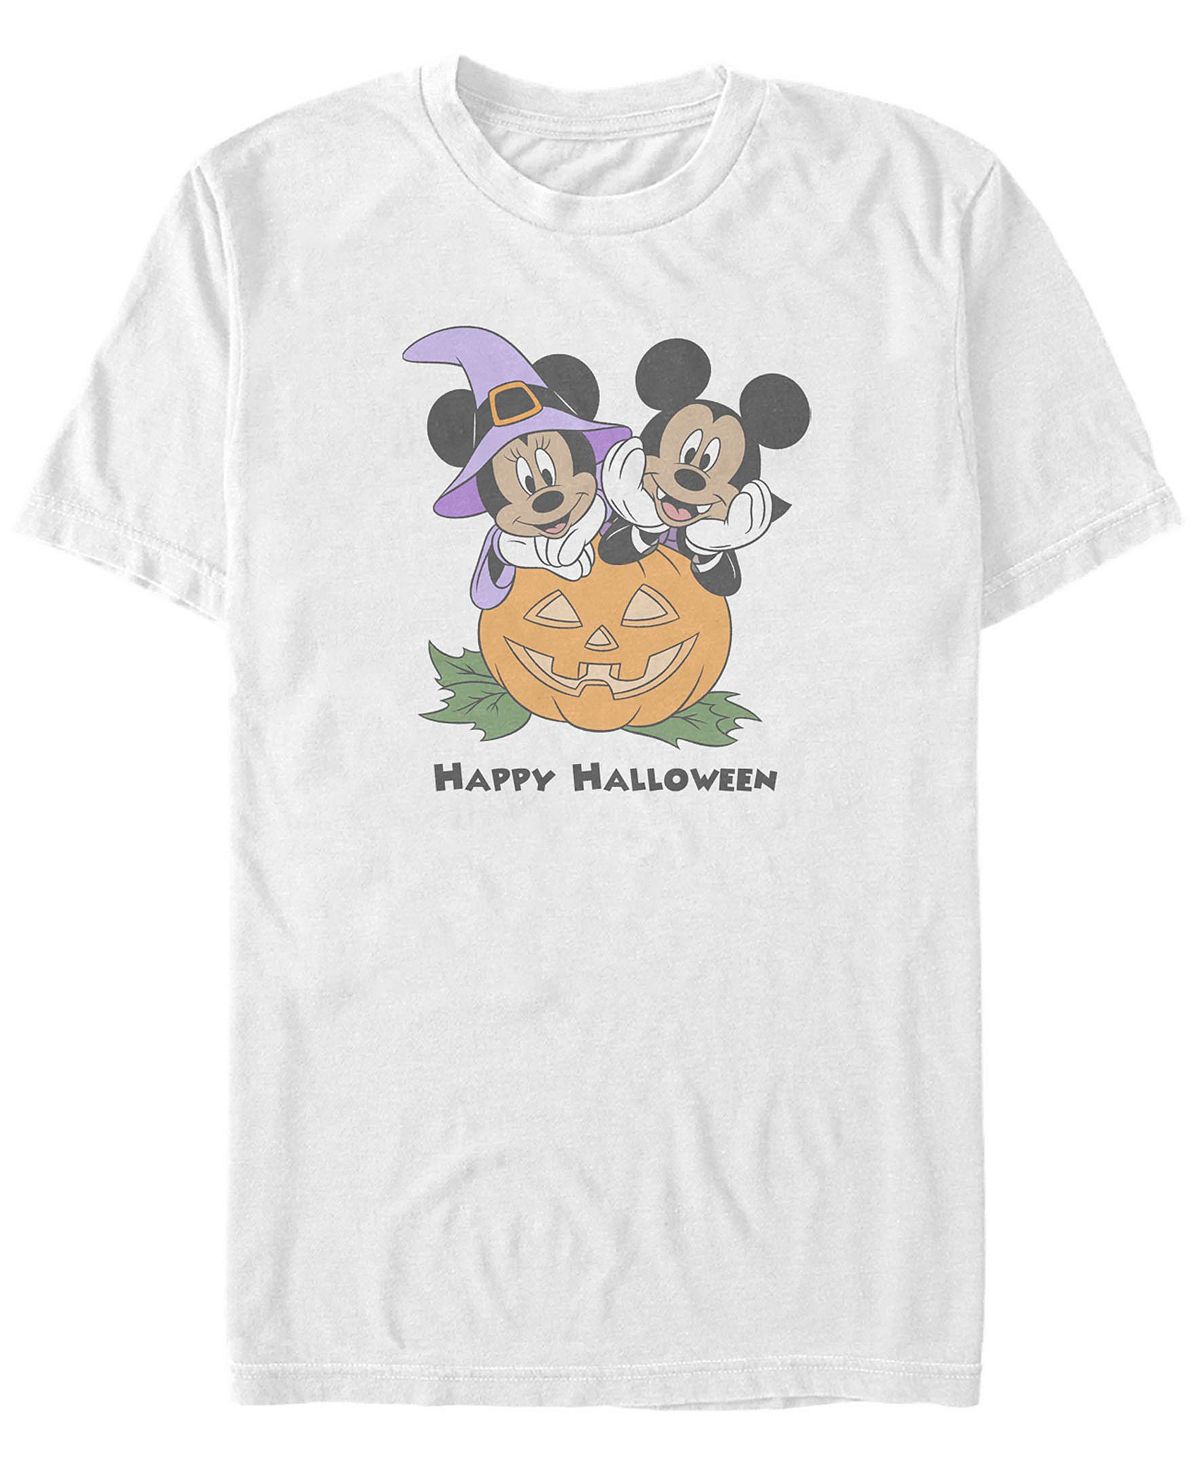 Мужская футболка с короткими рукавами mickey classic pumpkin mice Fifth Sun, белый